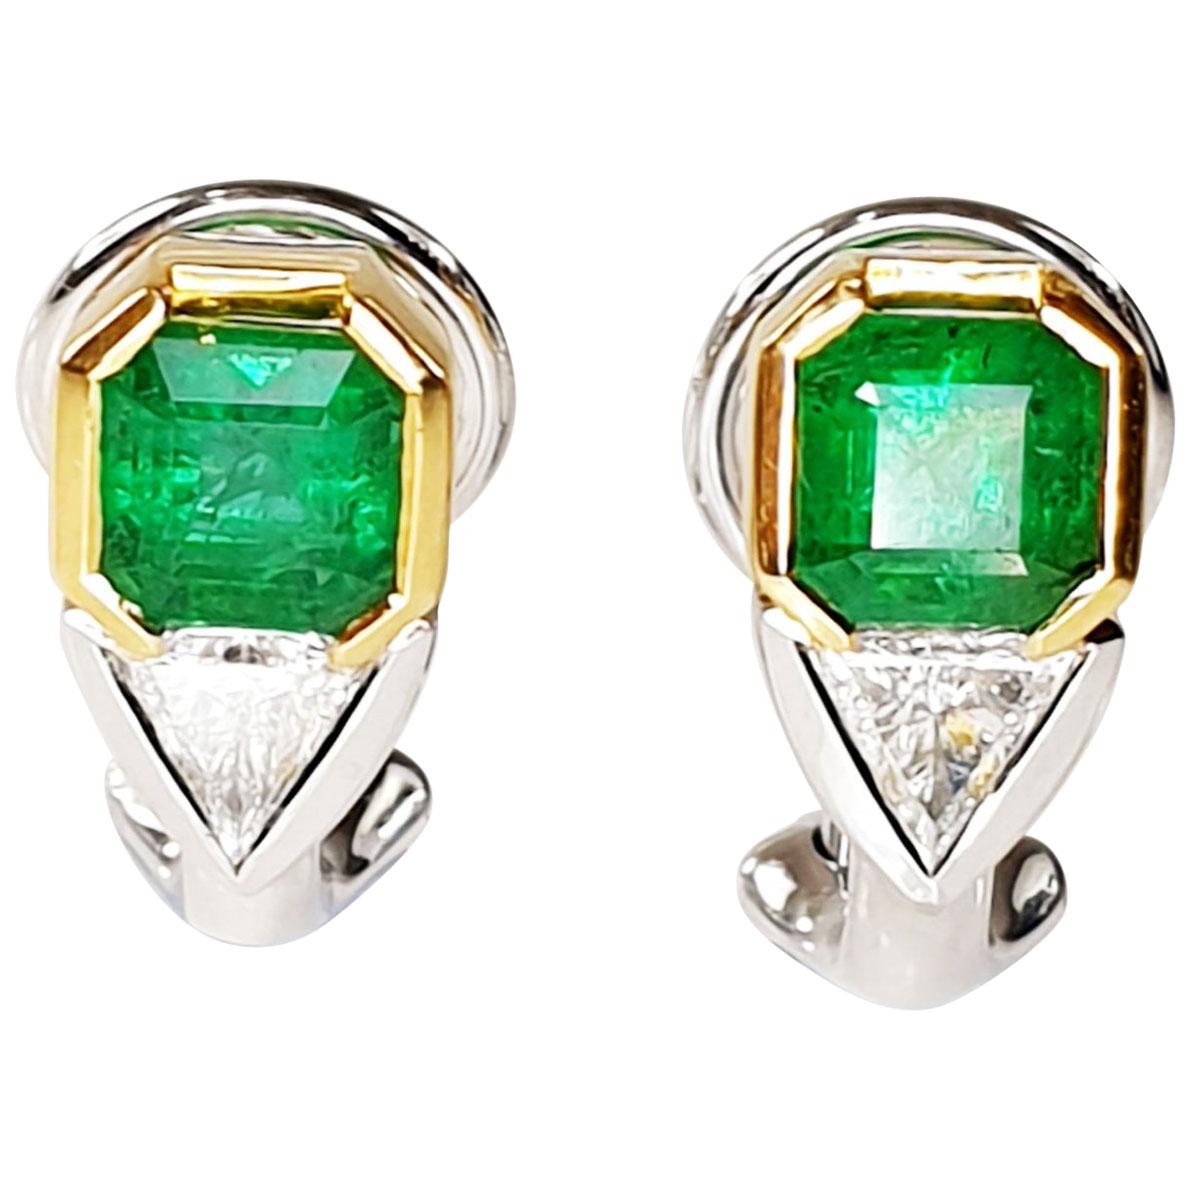 Colombian Emerald Earrings with Trillion-Cut Diamonds in 18 Karat Gold Settings